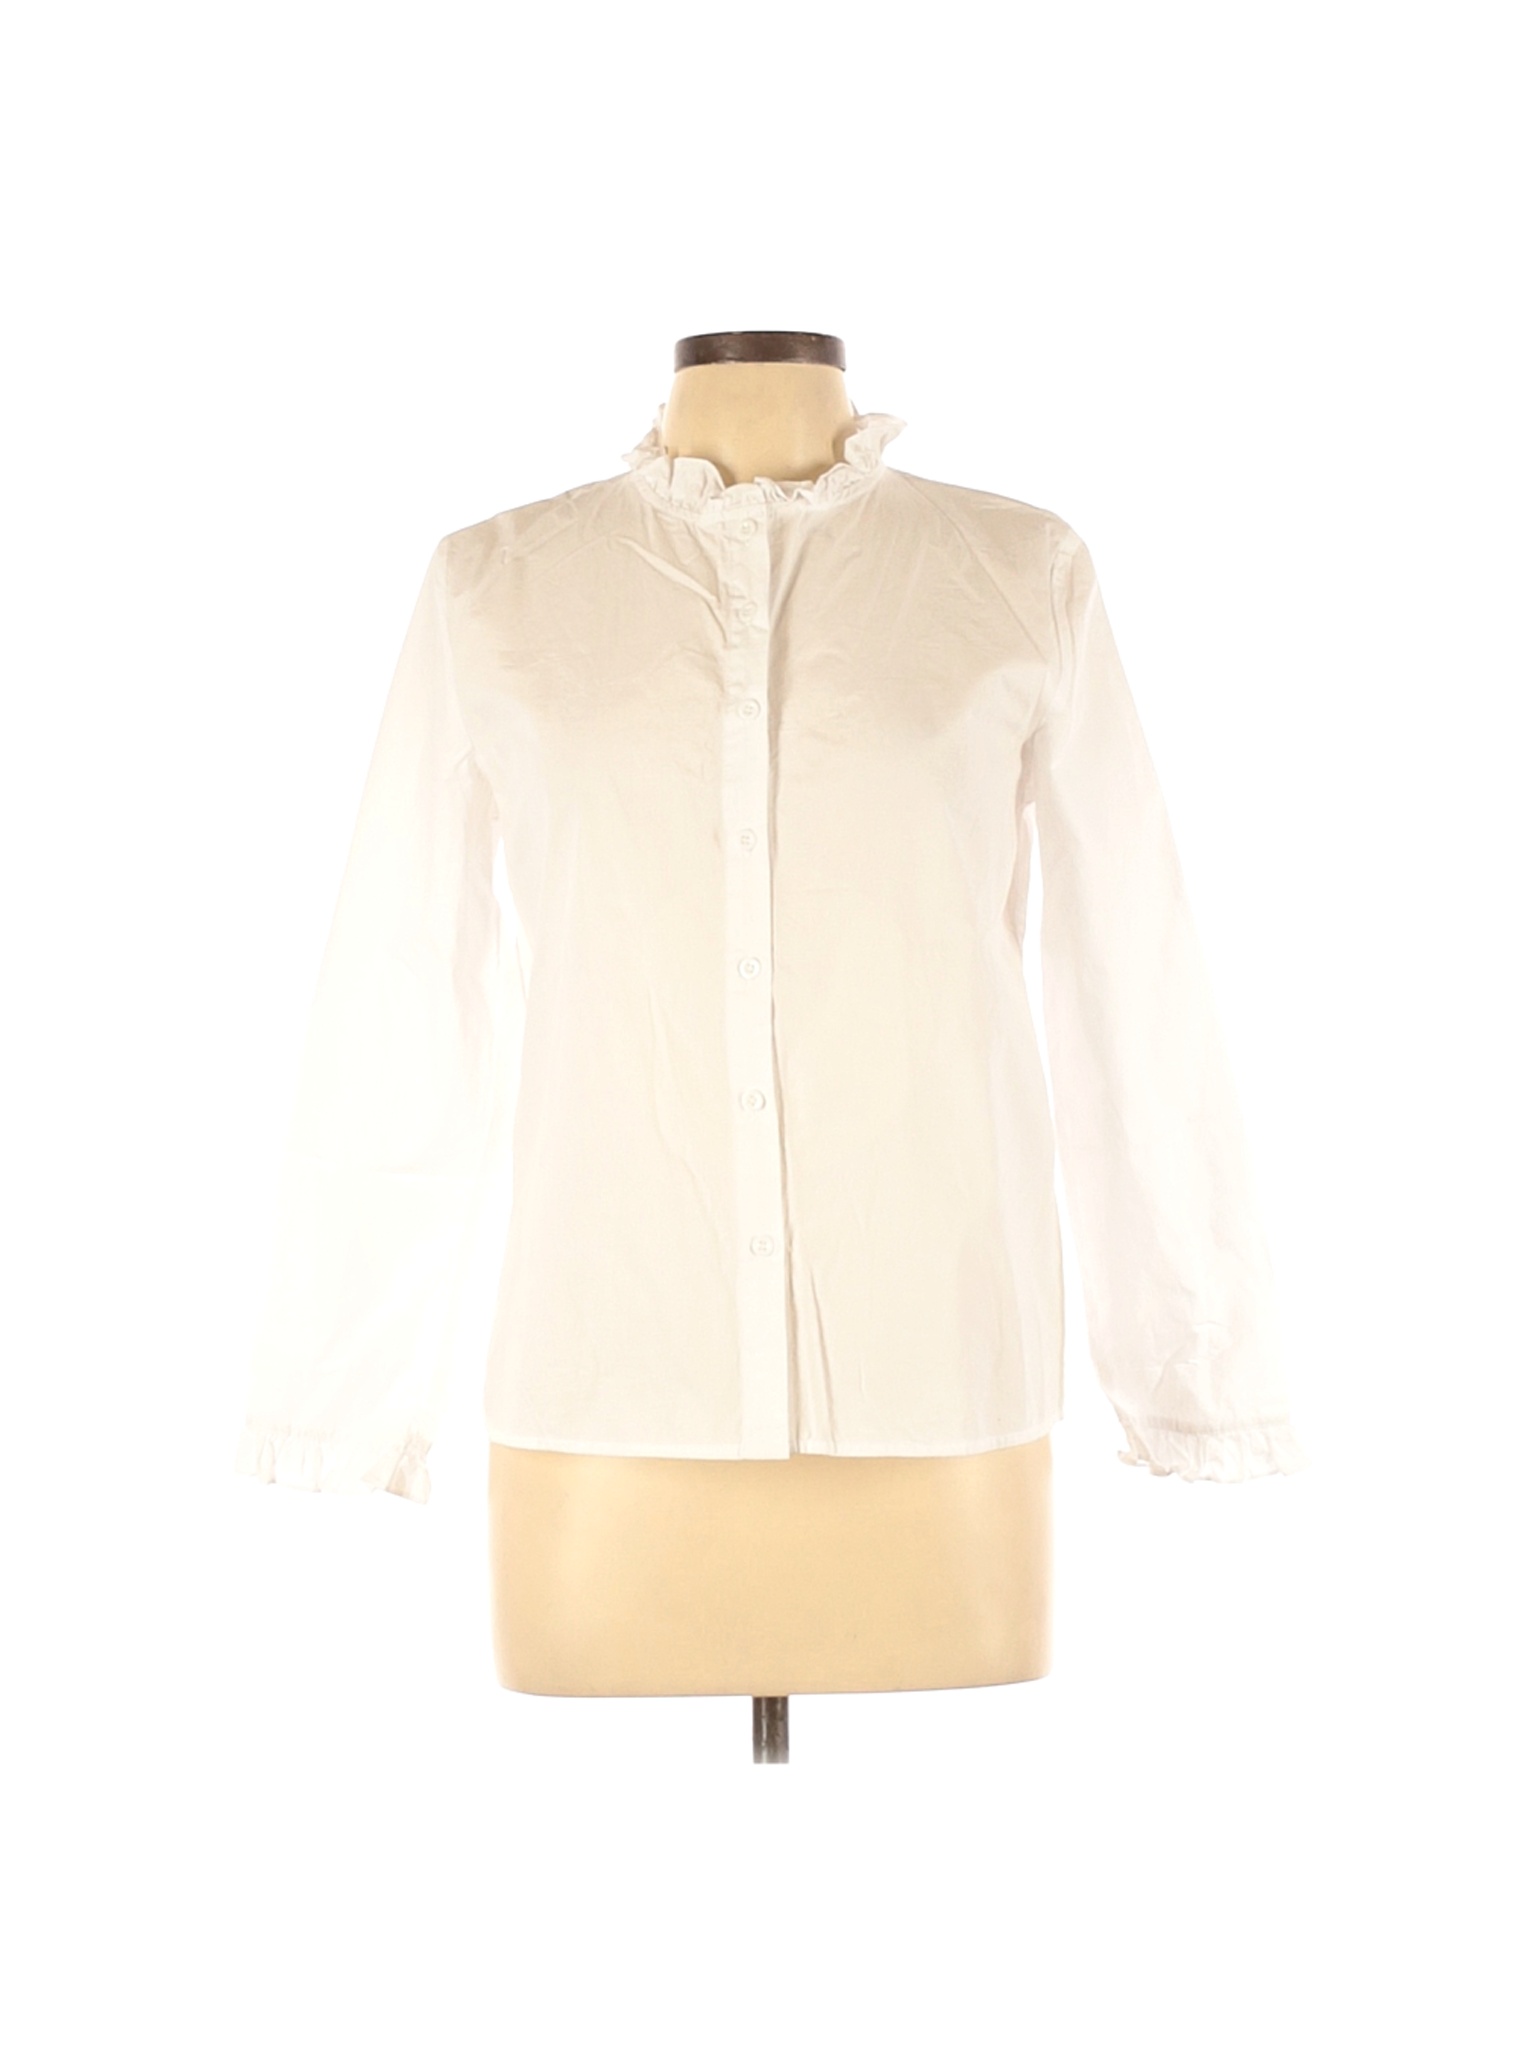 Assorted Brands Women Ivory Long Sleeve Button-Down Shirt XL | eBay